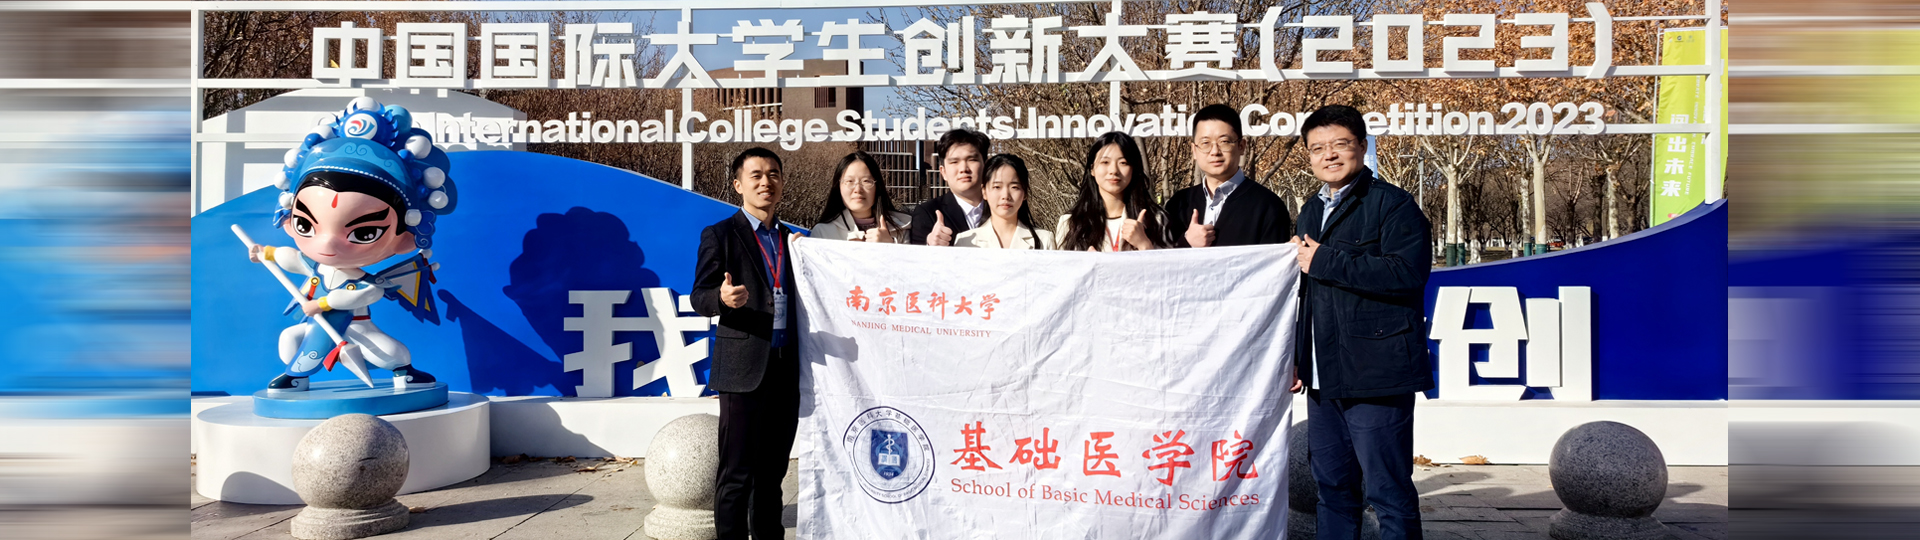 437ccm必赢国际在中国国际大学生创新大赛（2023）中取得历史性突破